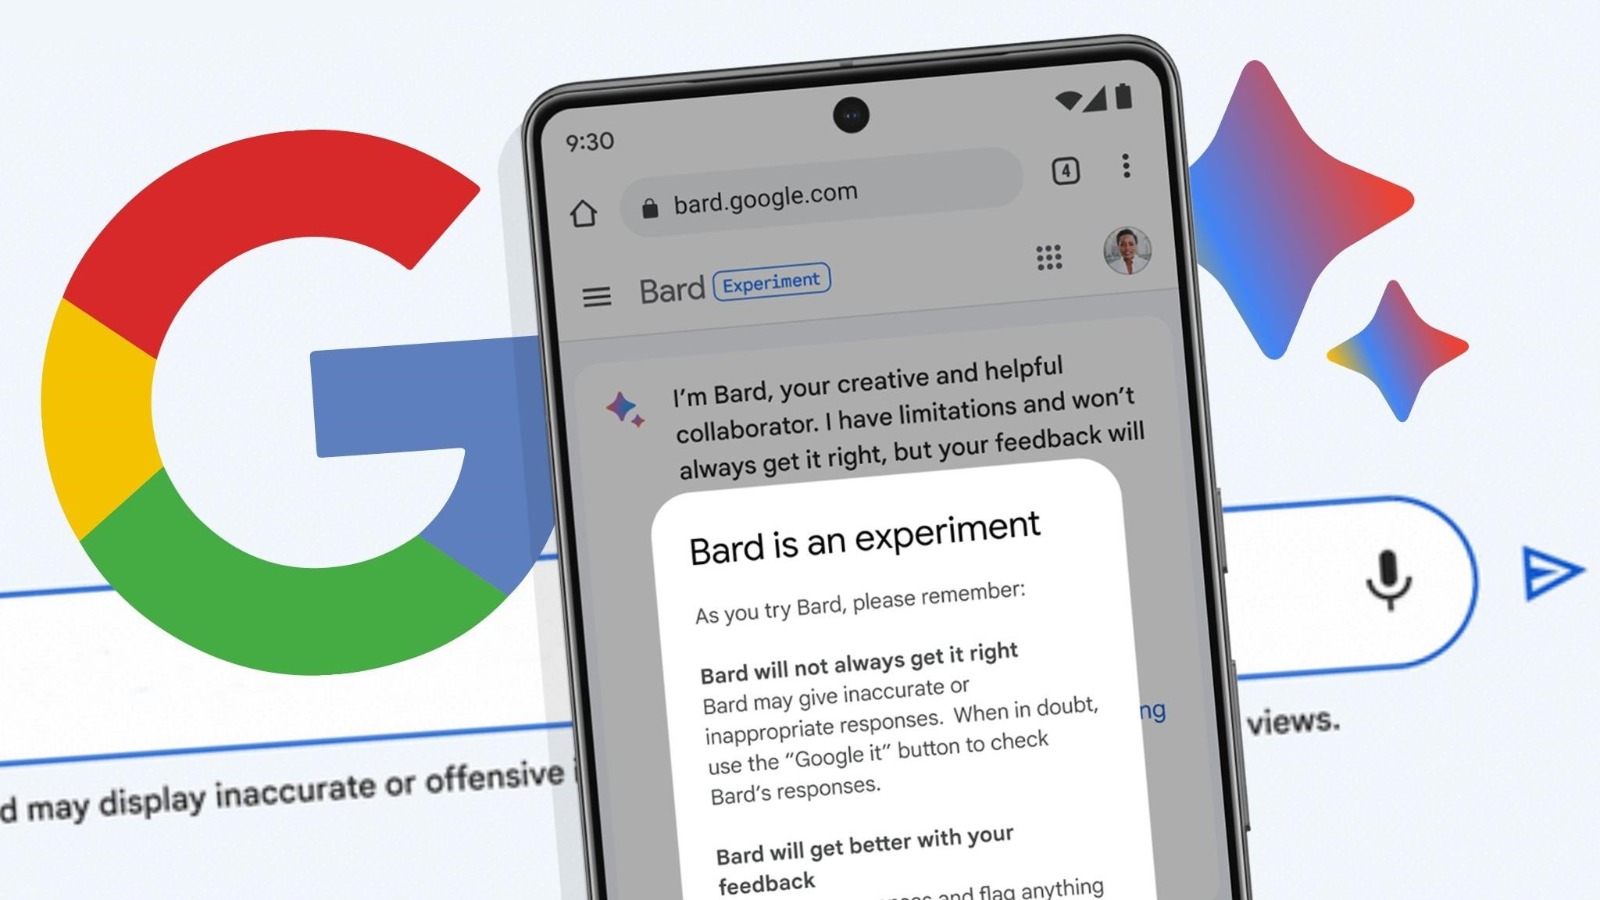 Google lança Bard para concorrer com ChatGPT no Brasil